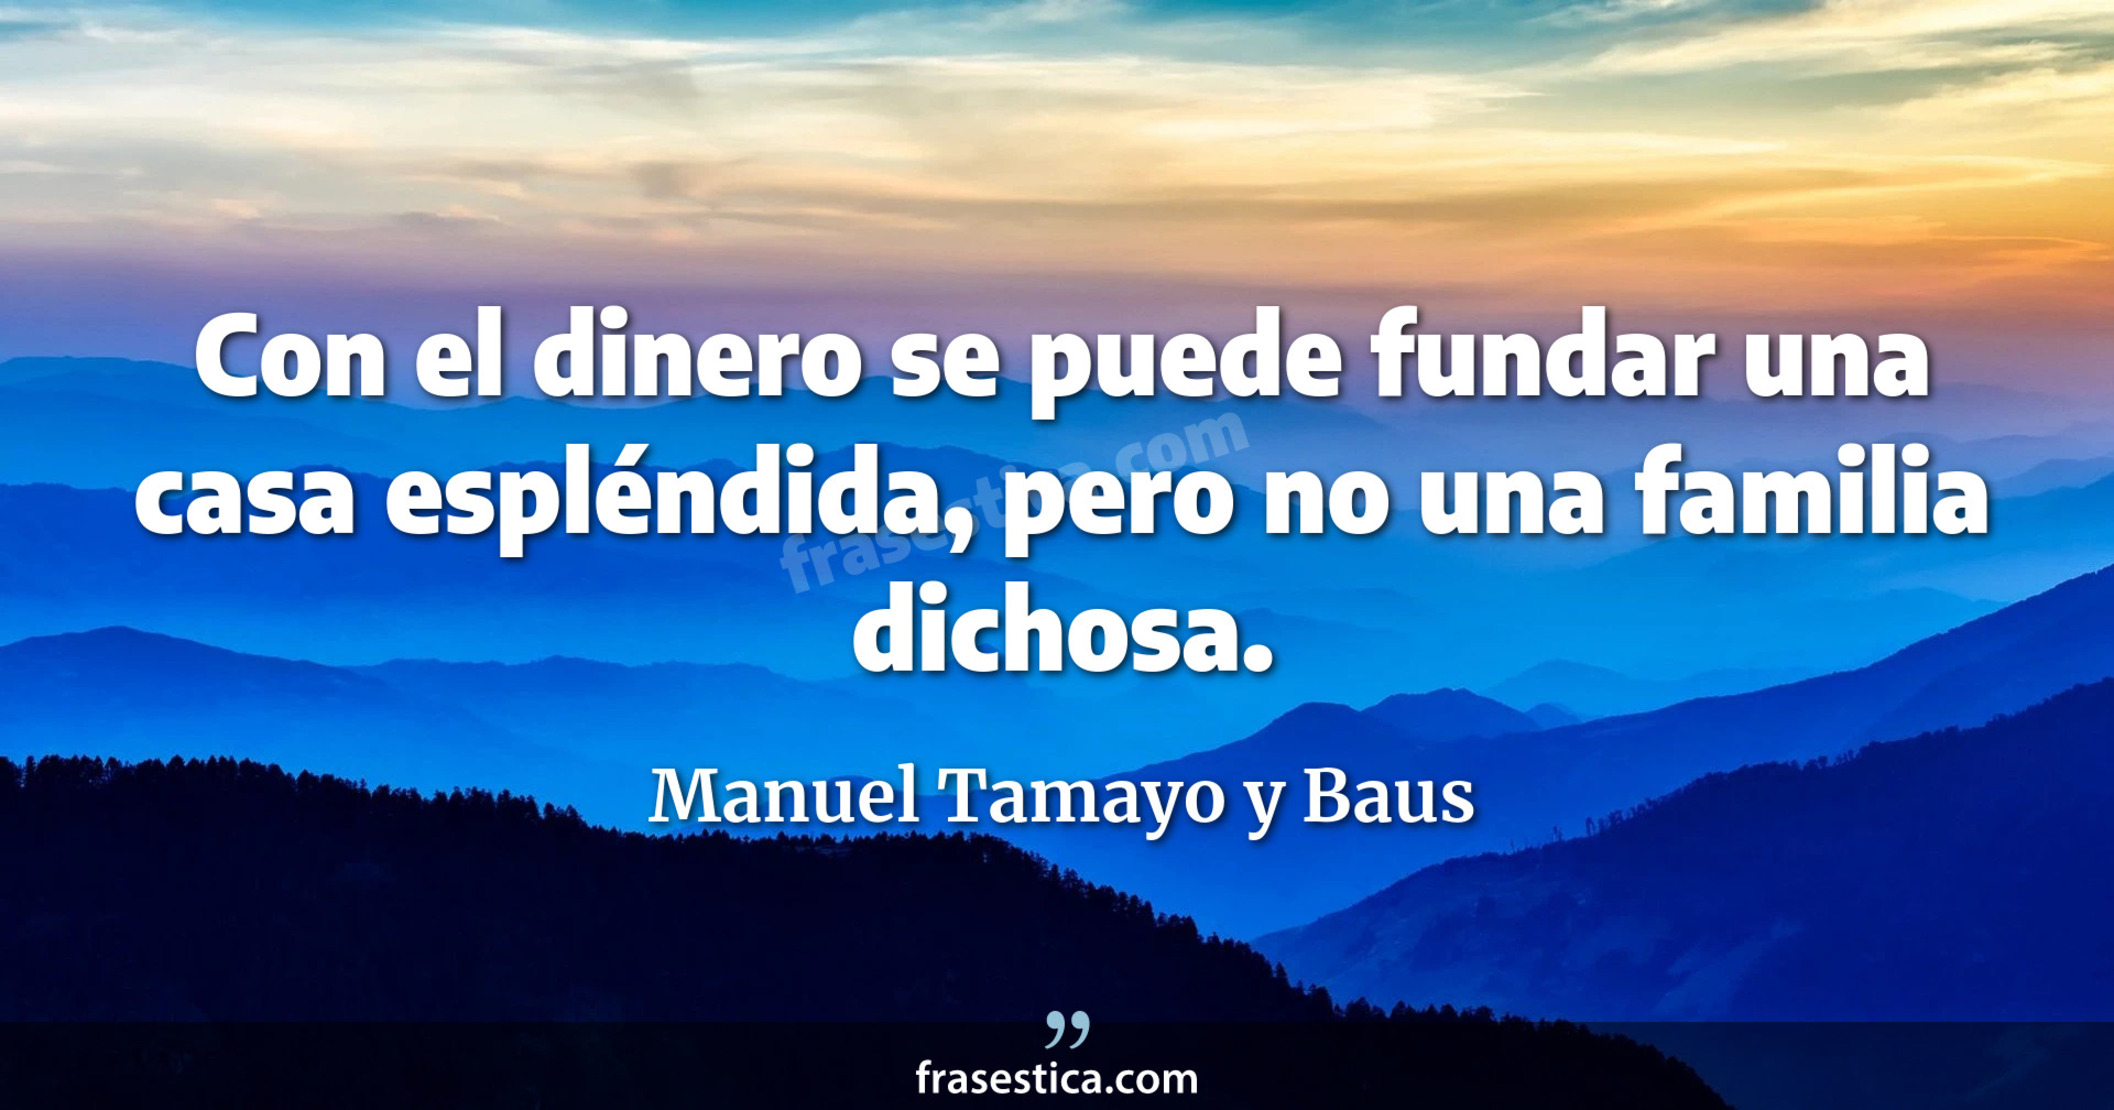 Con el dinero se puede fundar una casa espléndida, pero no una familia dichosa. - Manuel Tamayo y Baus